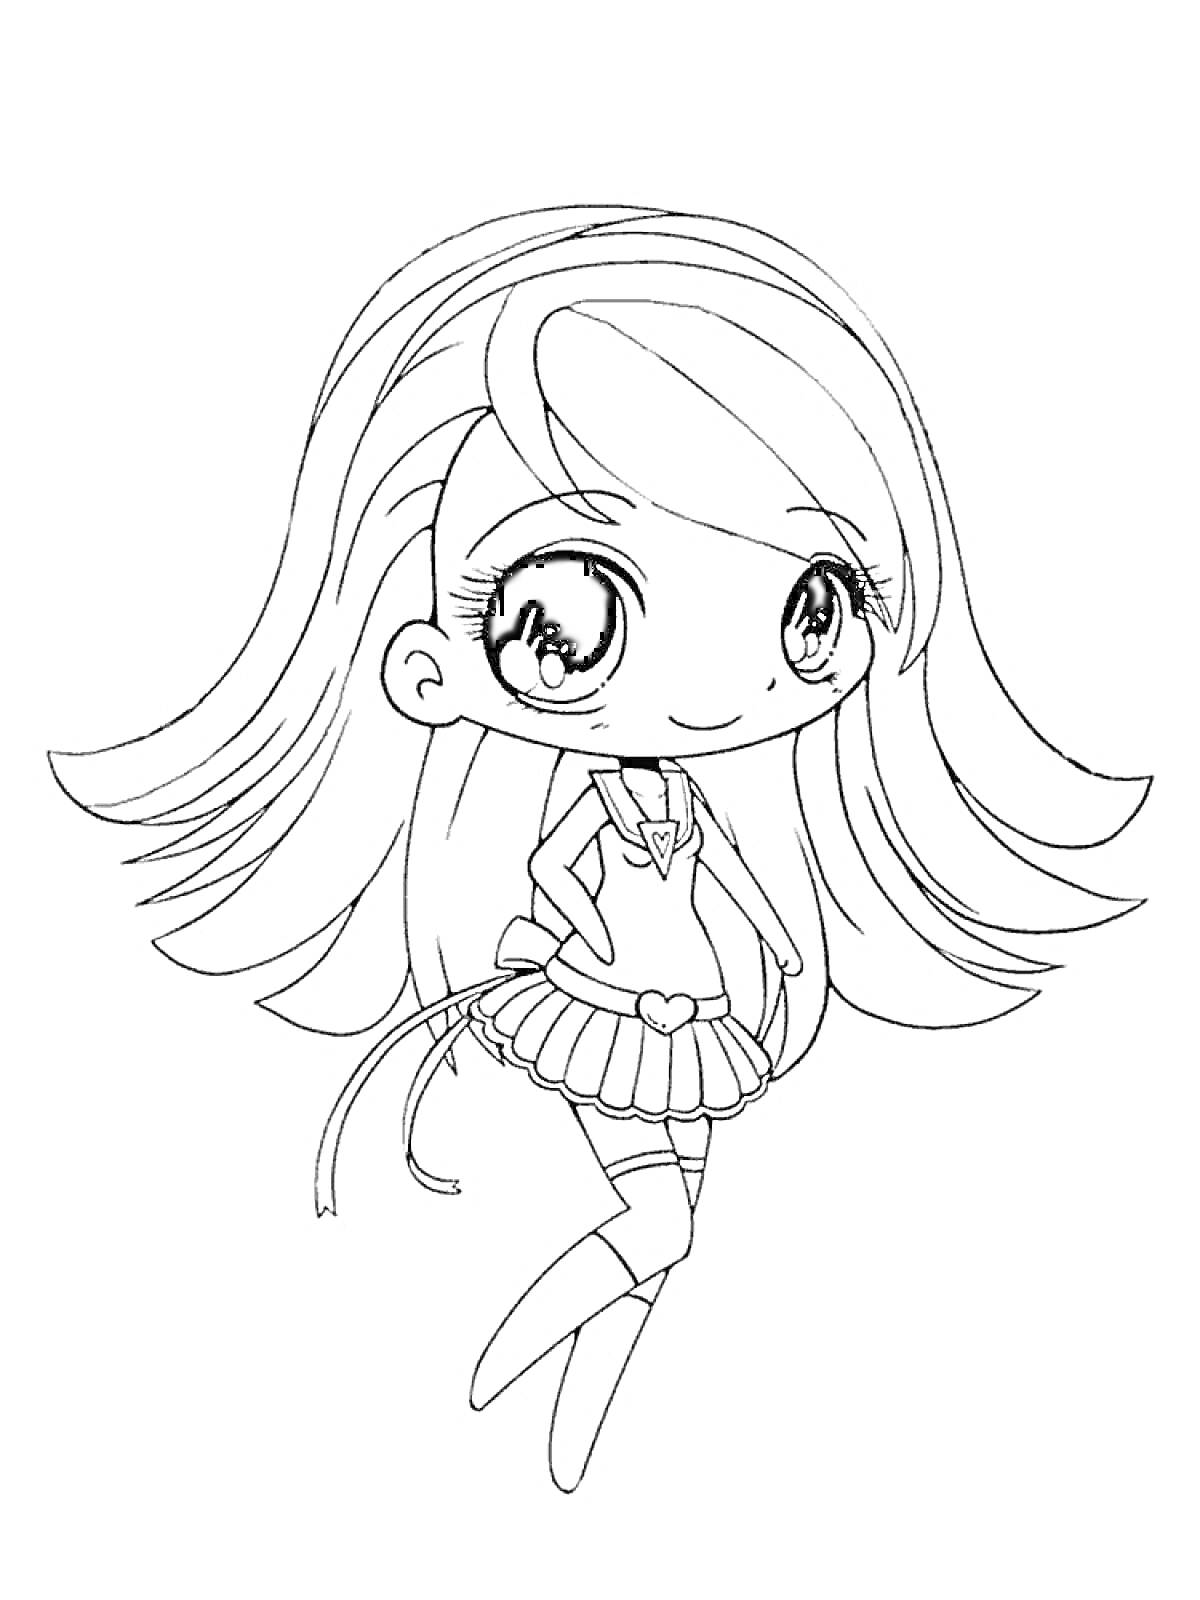 Раскраска Девочка в школьной форме с длинными волосами и бантиком